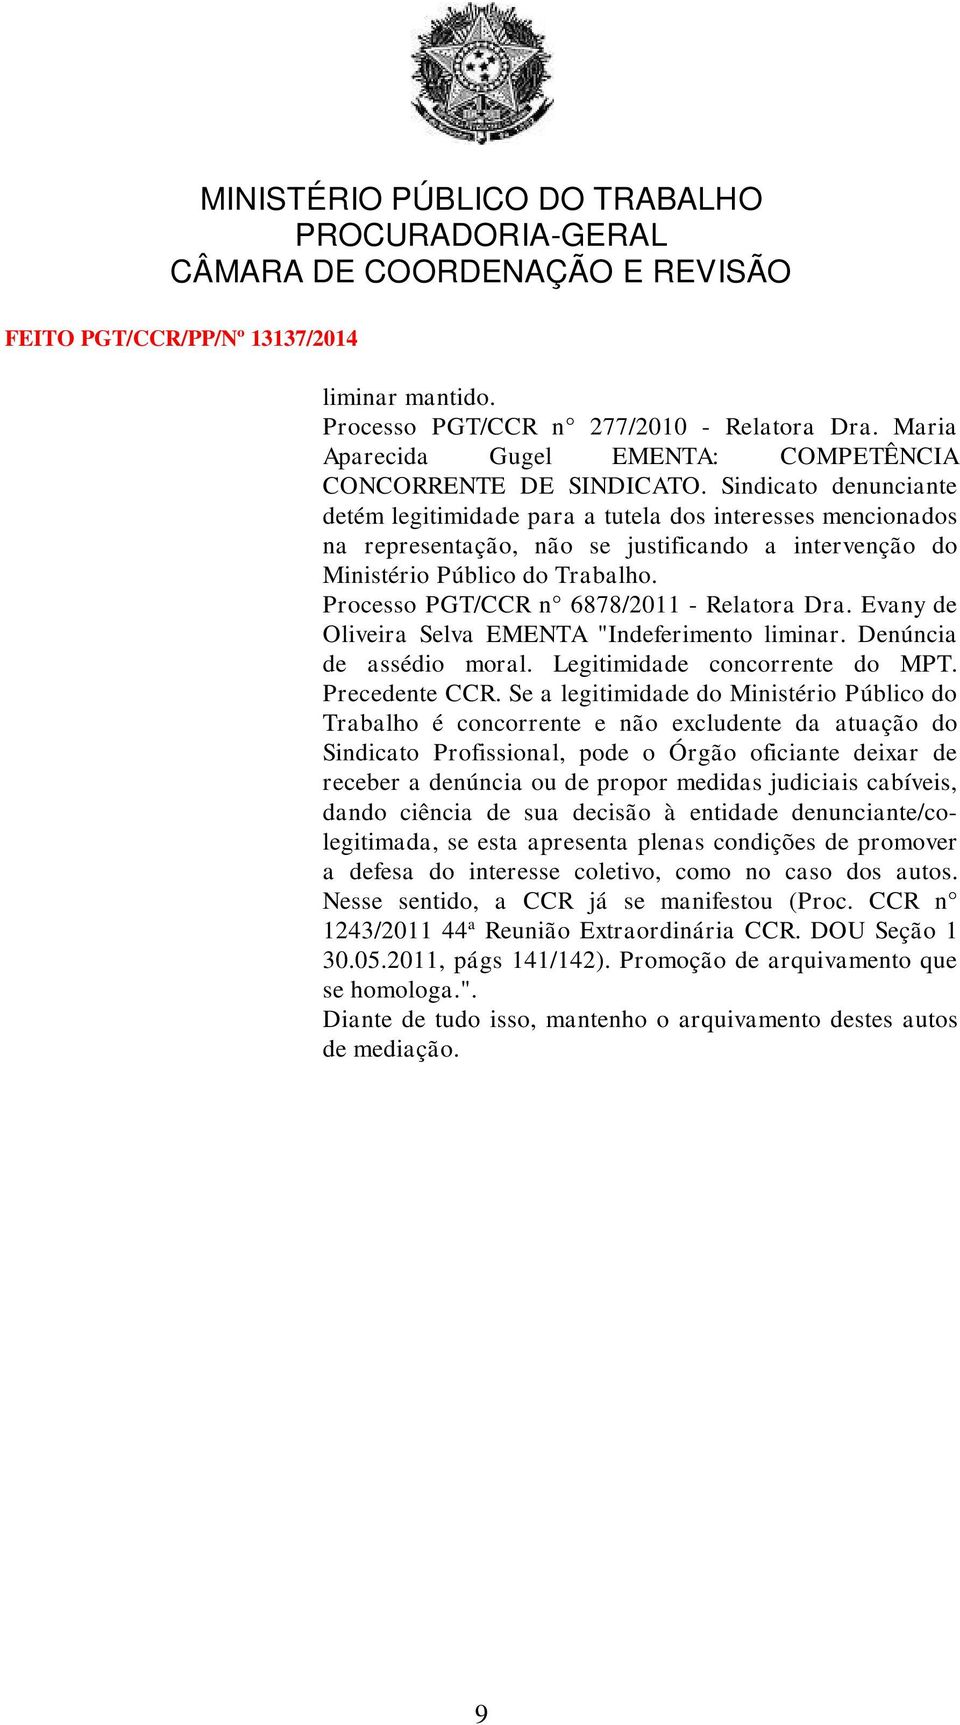 Processo PGT/CCR n 6878/2011 - Relatora Dra. Evany de Oliveira Selva EMENTA "Indeferimento liminar. Denúncia de assédio moral. Legitimidade concorrente do MPT. Precedente CCR.